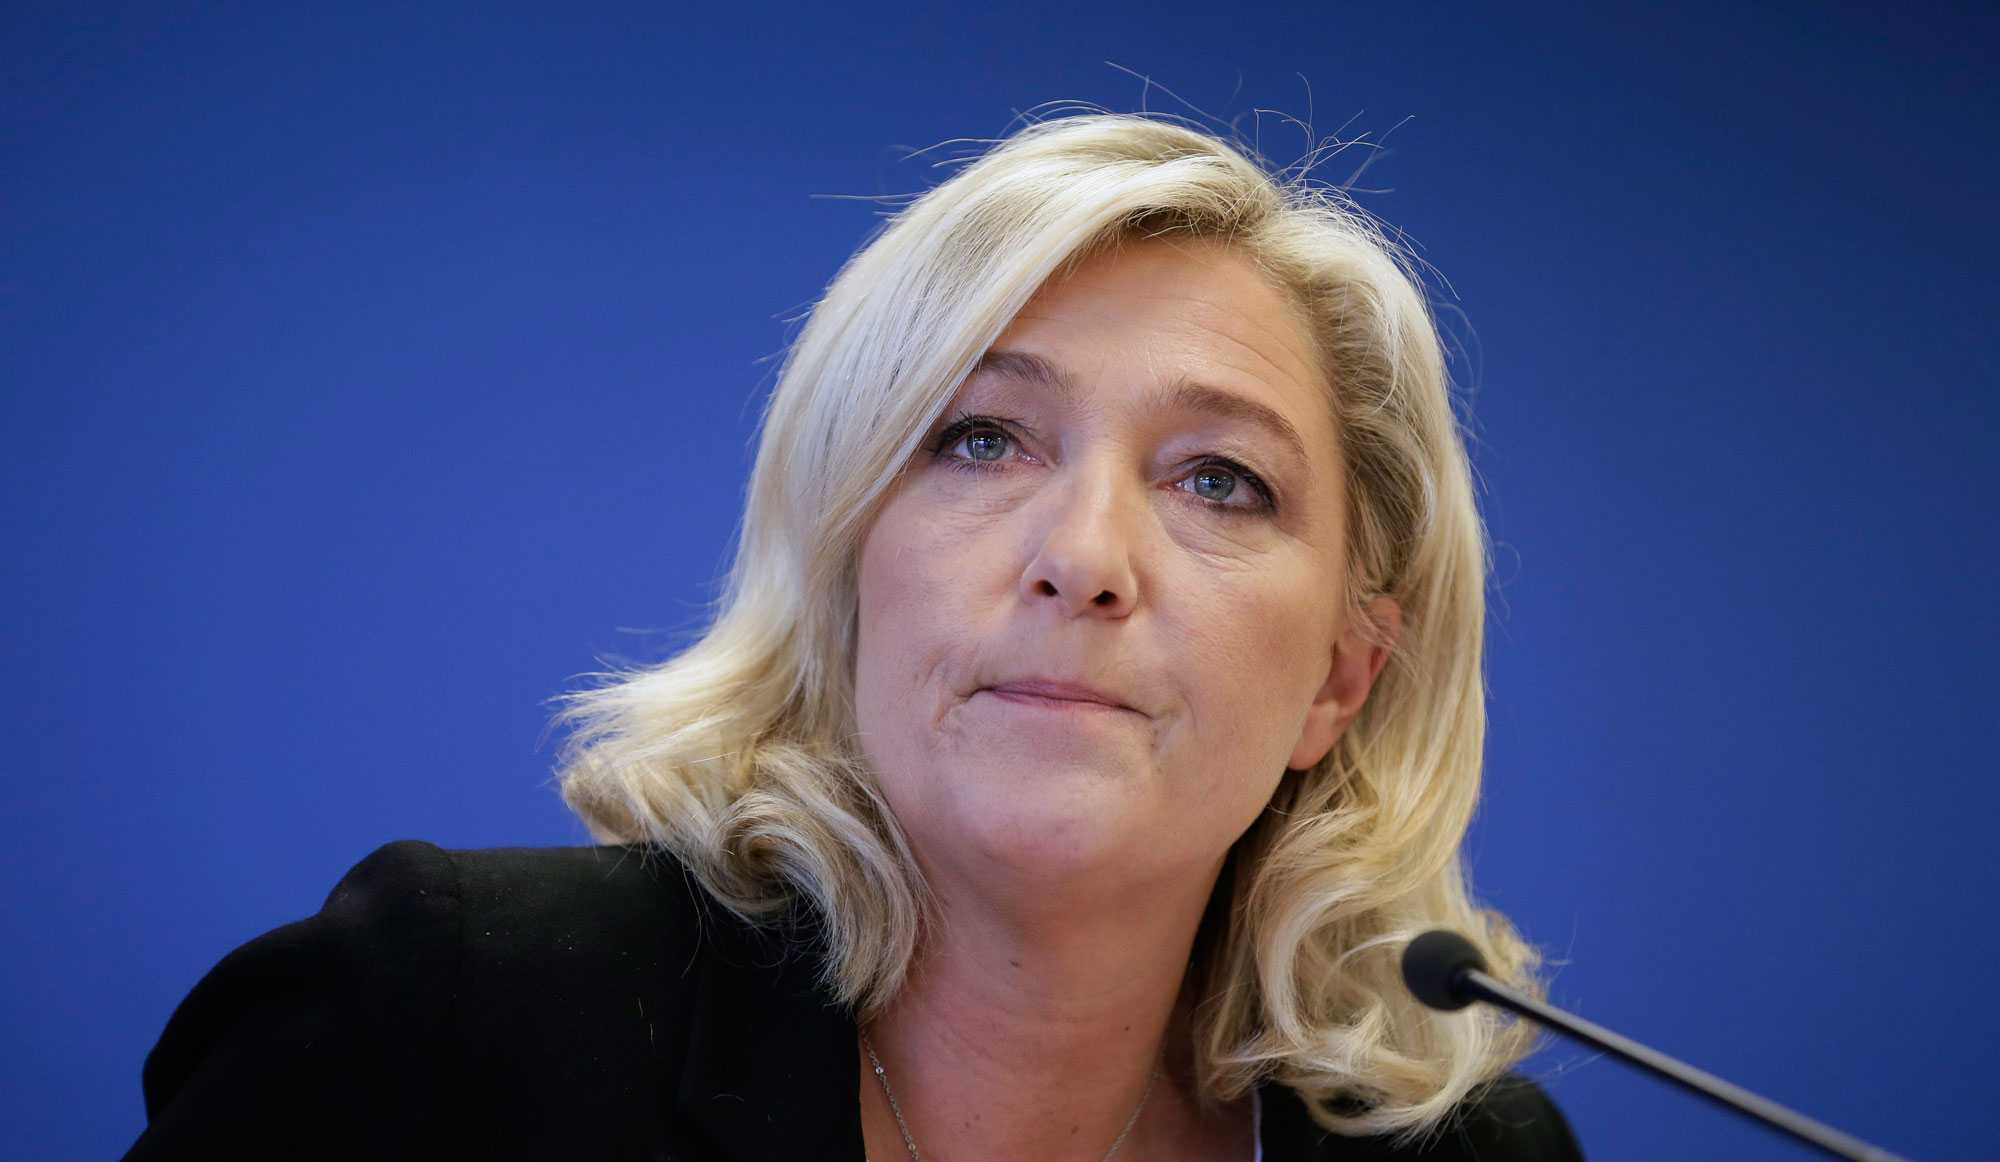 La Francia si prepara al voto: la sinistra di Hollande soccombe all'estrema destra di Marine Le Pen